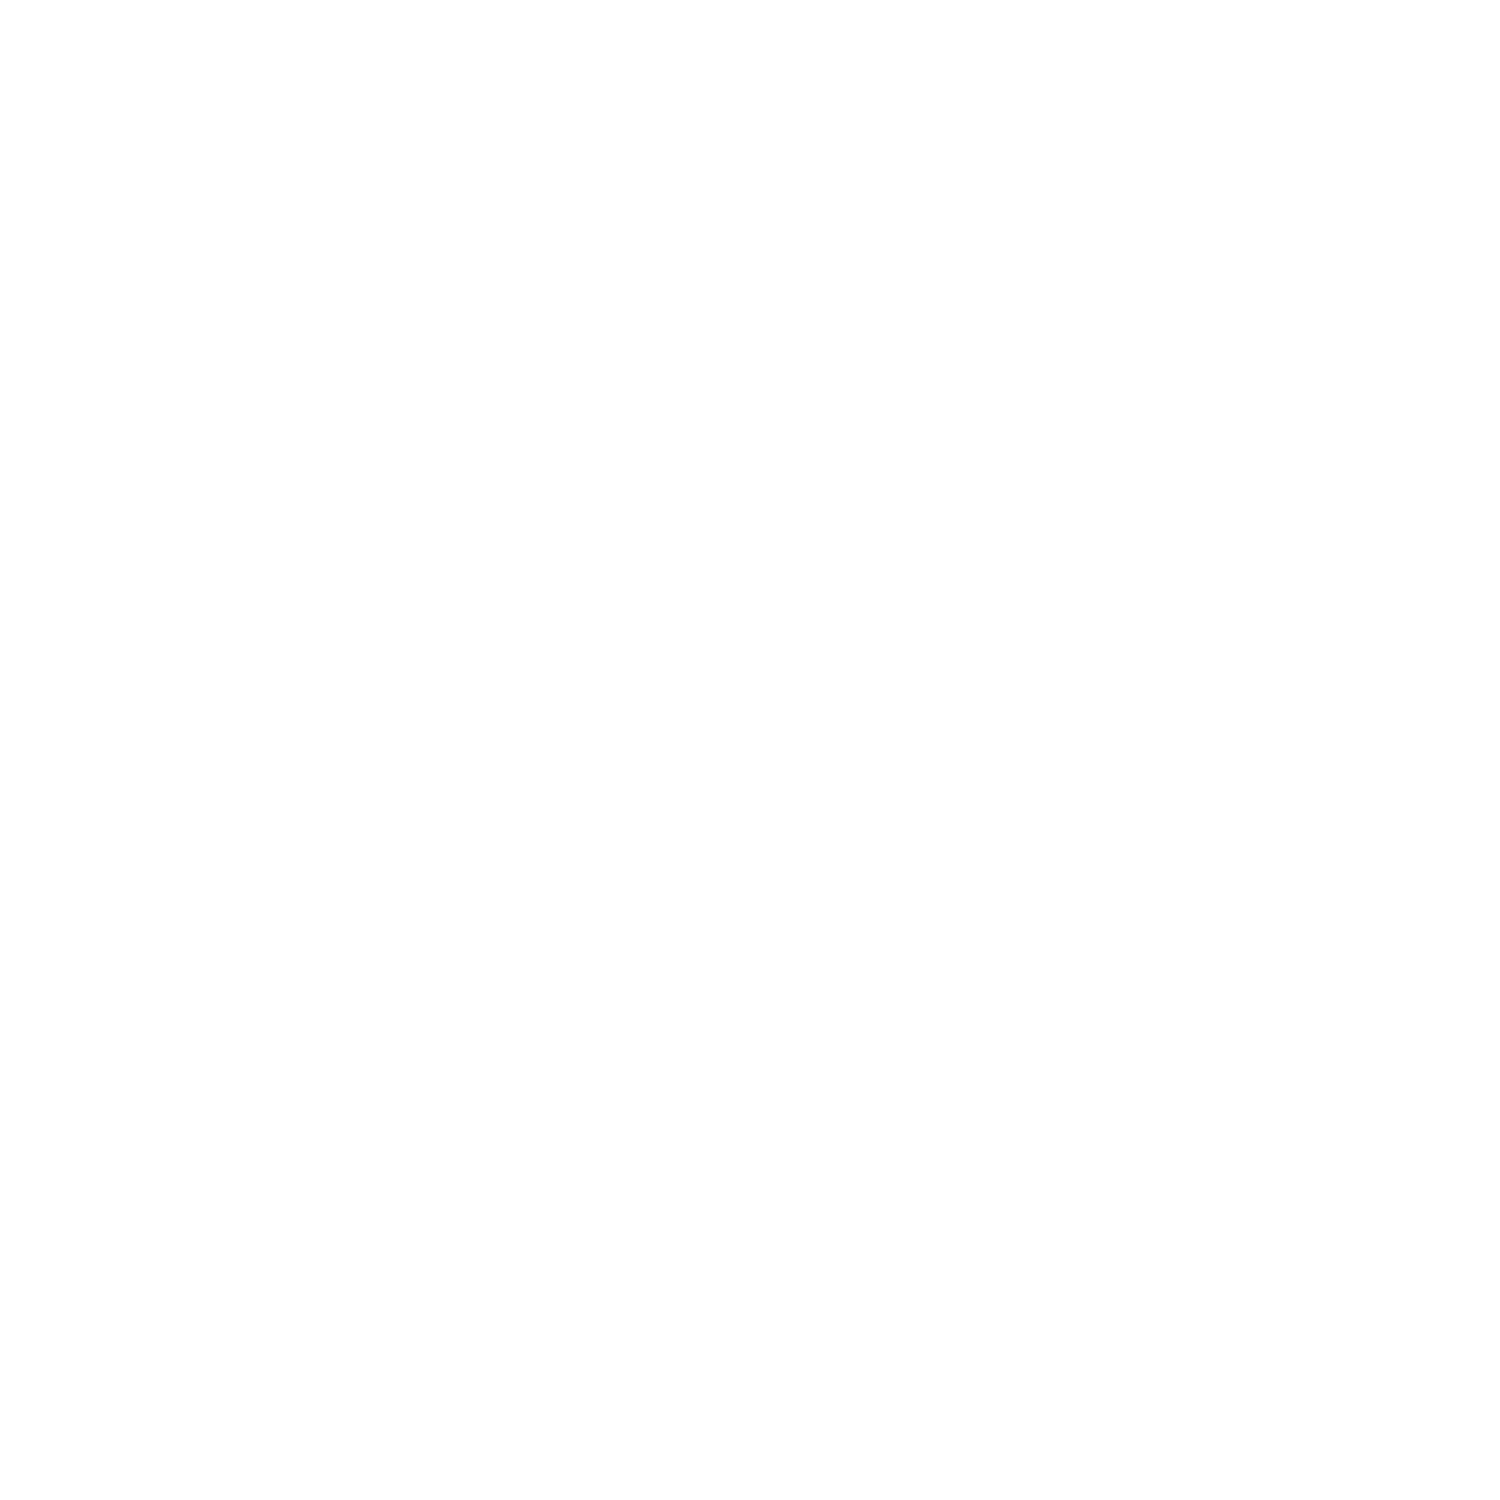 Cycle Oath